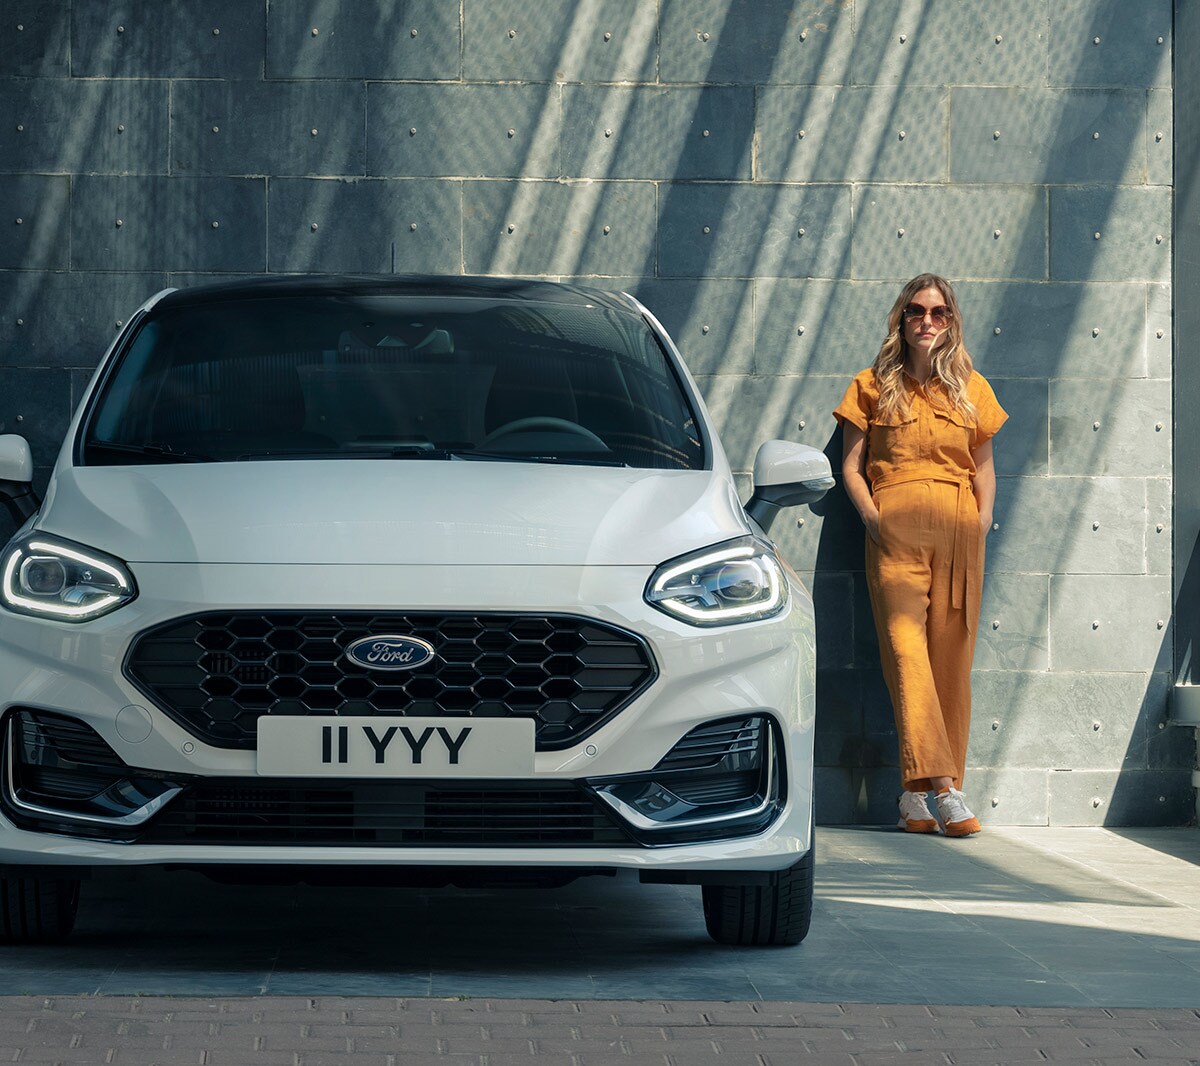 Ford Fiesta couleur blanche. Vue de face stationnant devant un bâtiment moderne, avec une femme à l’arrière-plan.